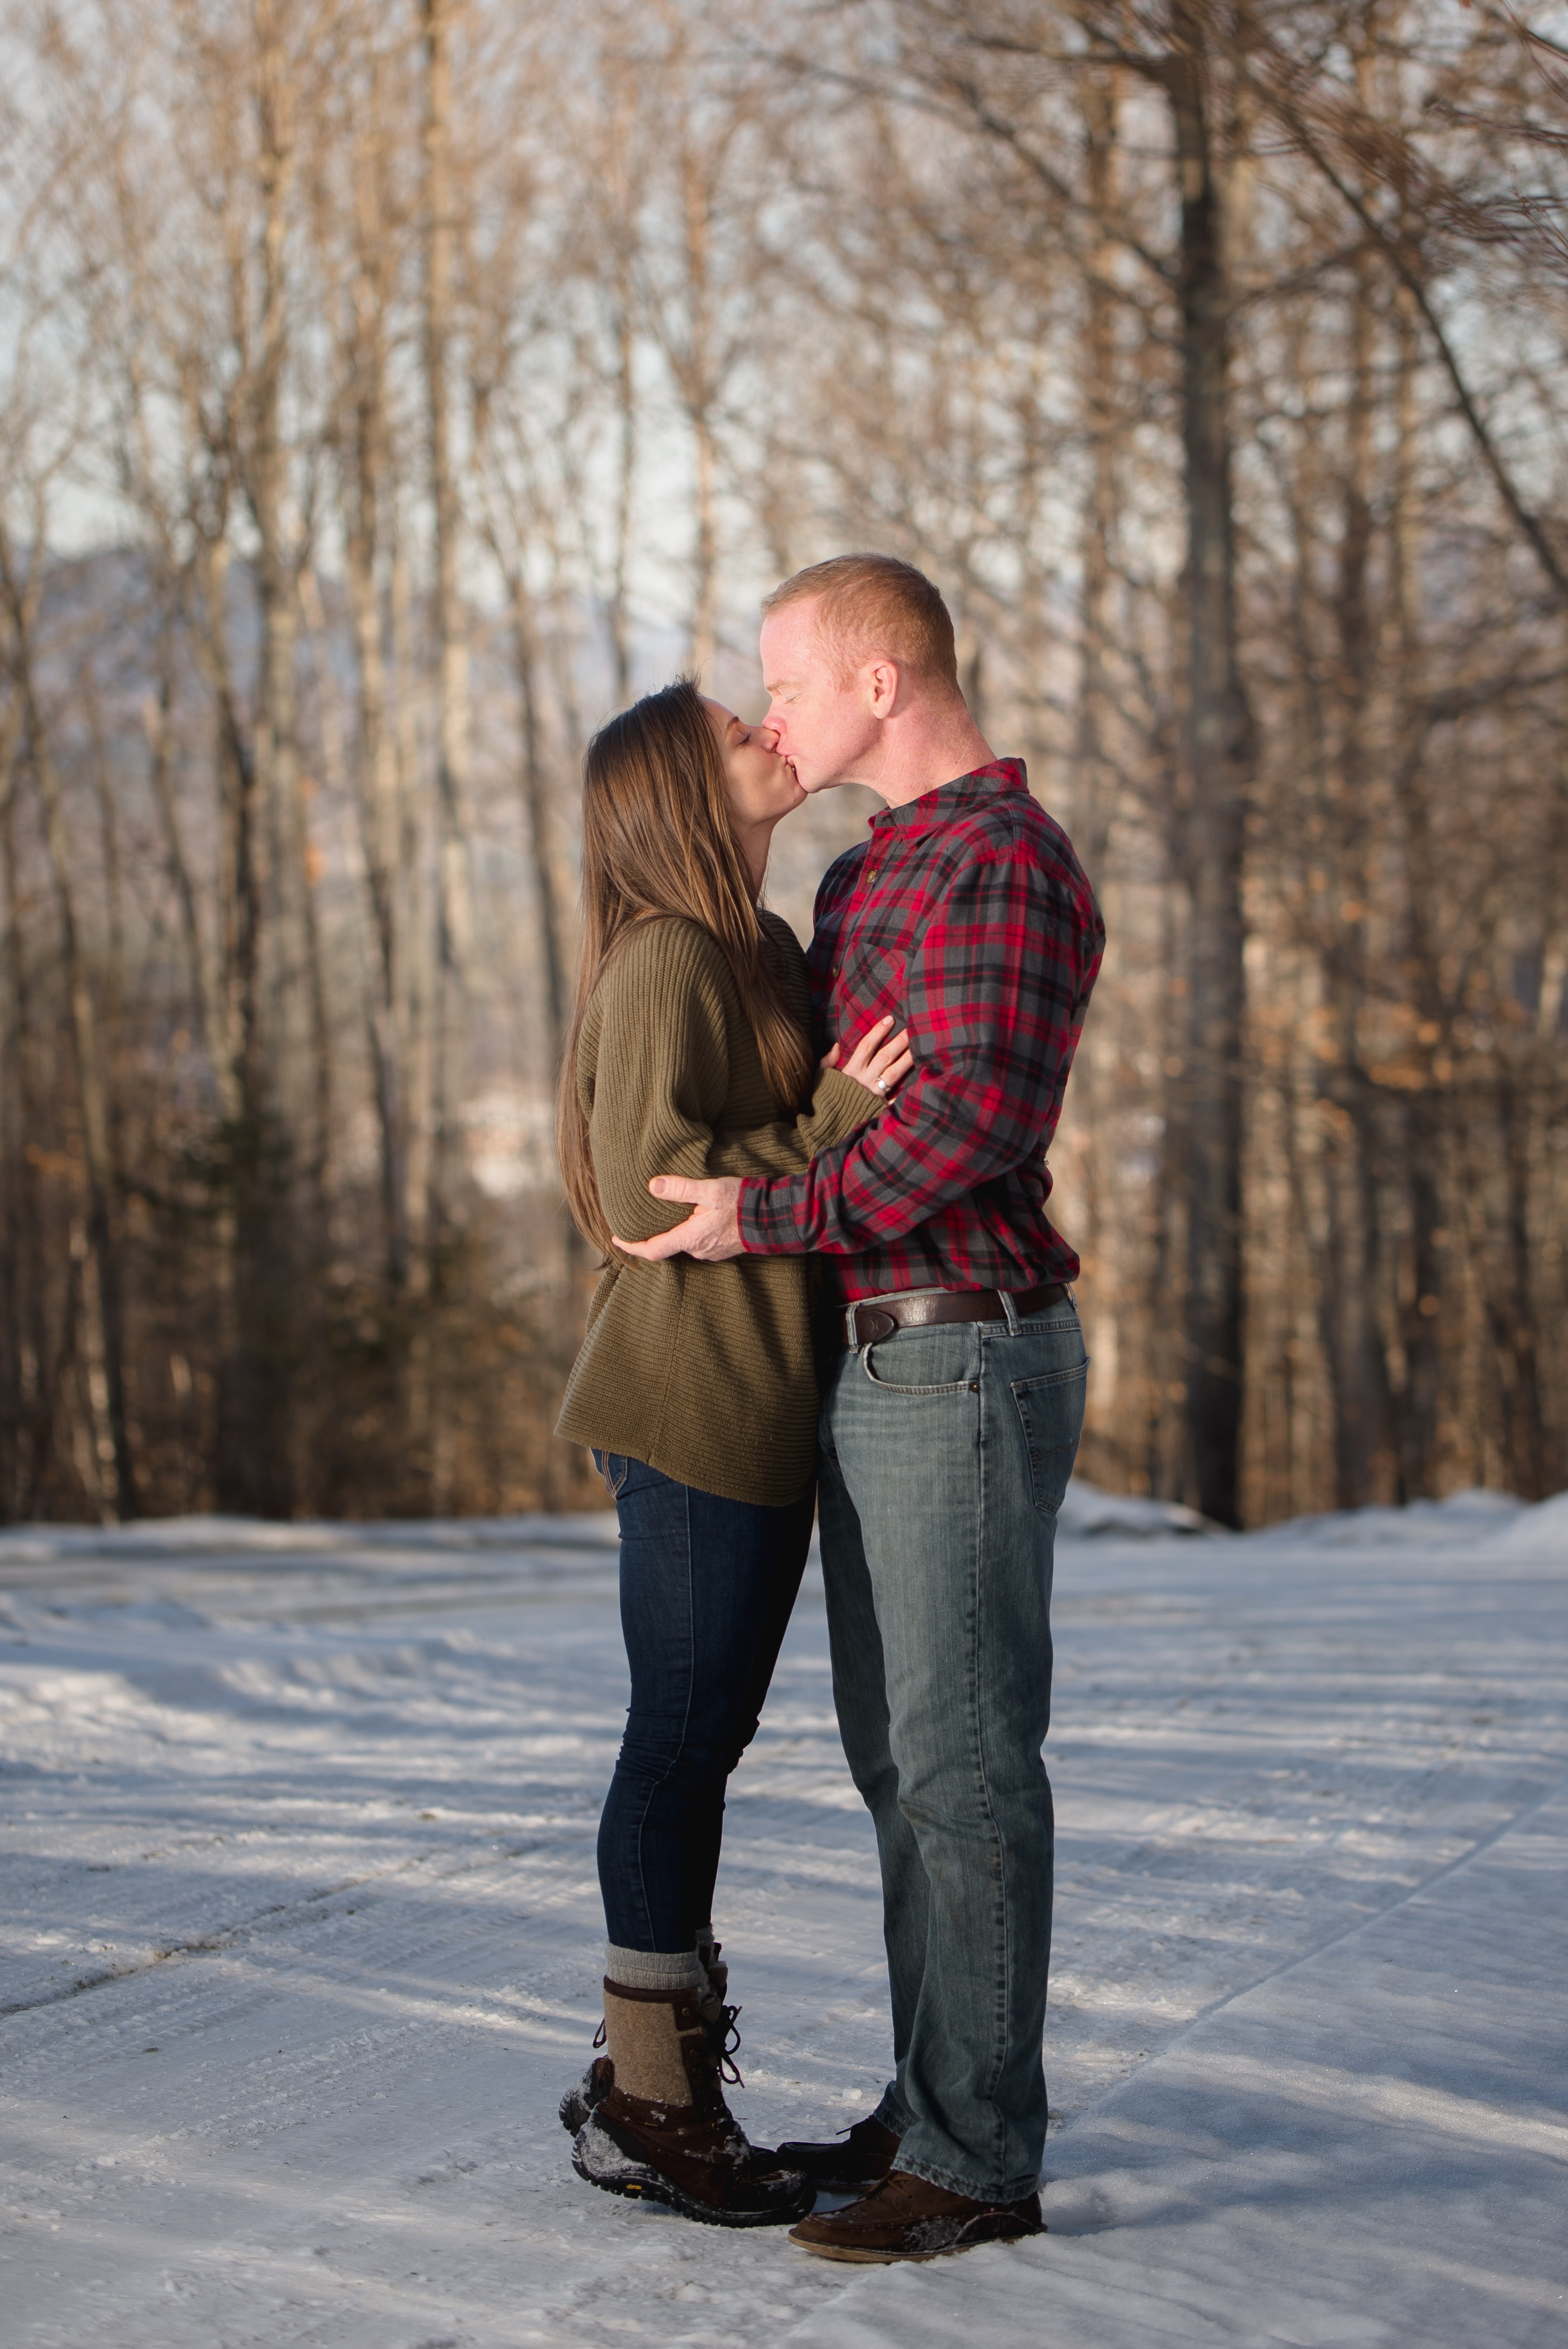 New Hampshire Engagement Photography 2 - Portfolio: Engagement Photography